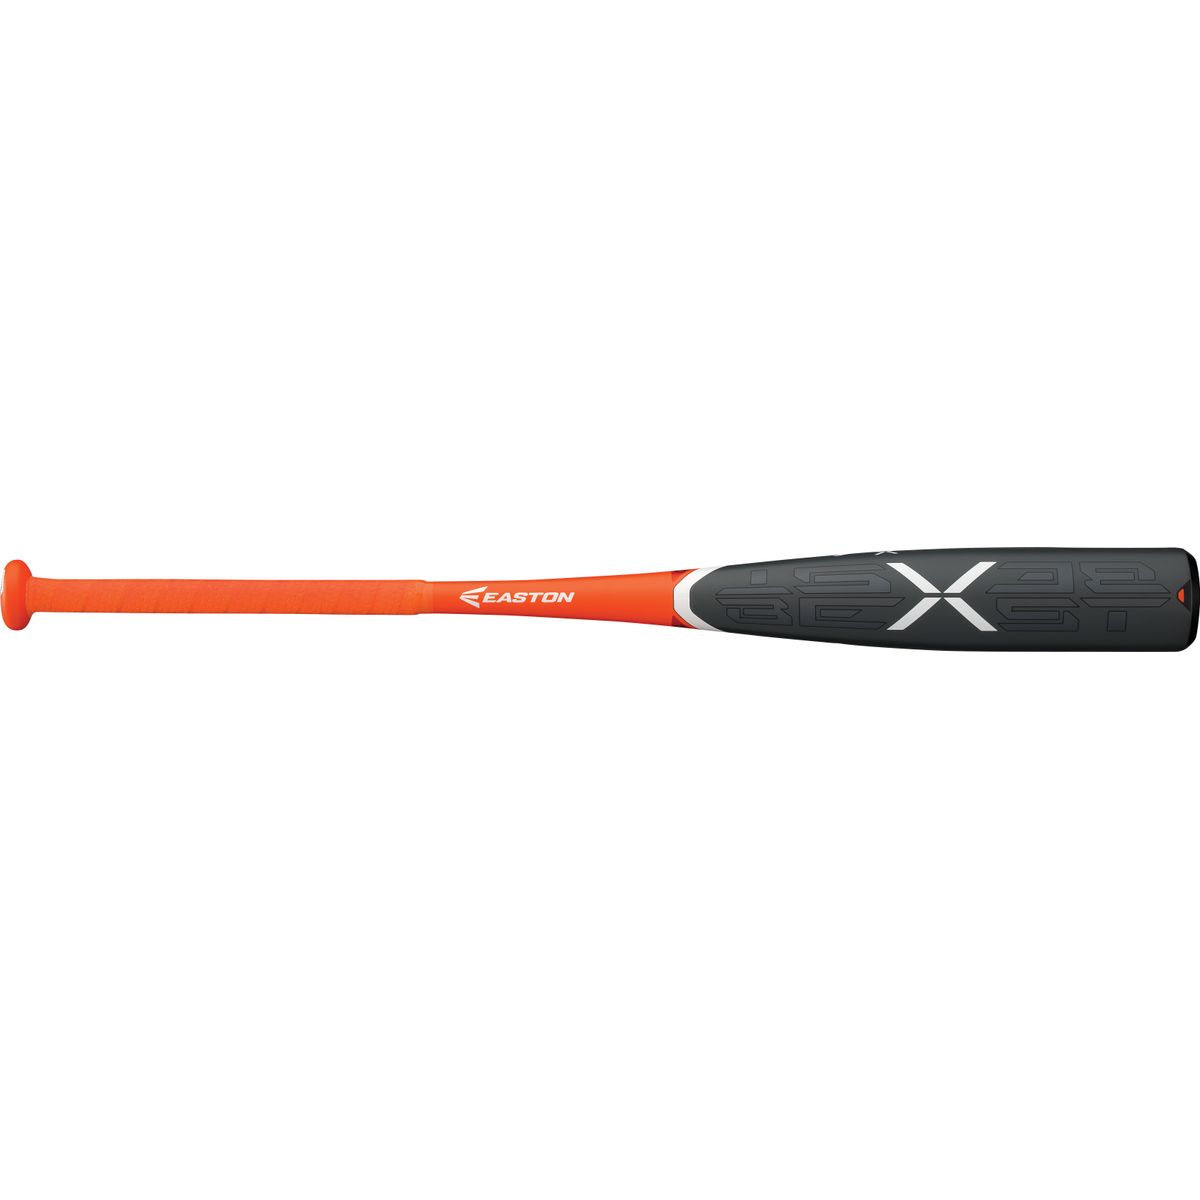 2018 Easton Beast X 2 3/4″ USSSA Alloy Baseball Bat SL18BX10 31/21 NIW 